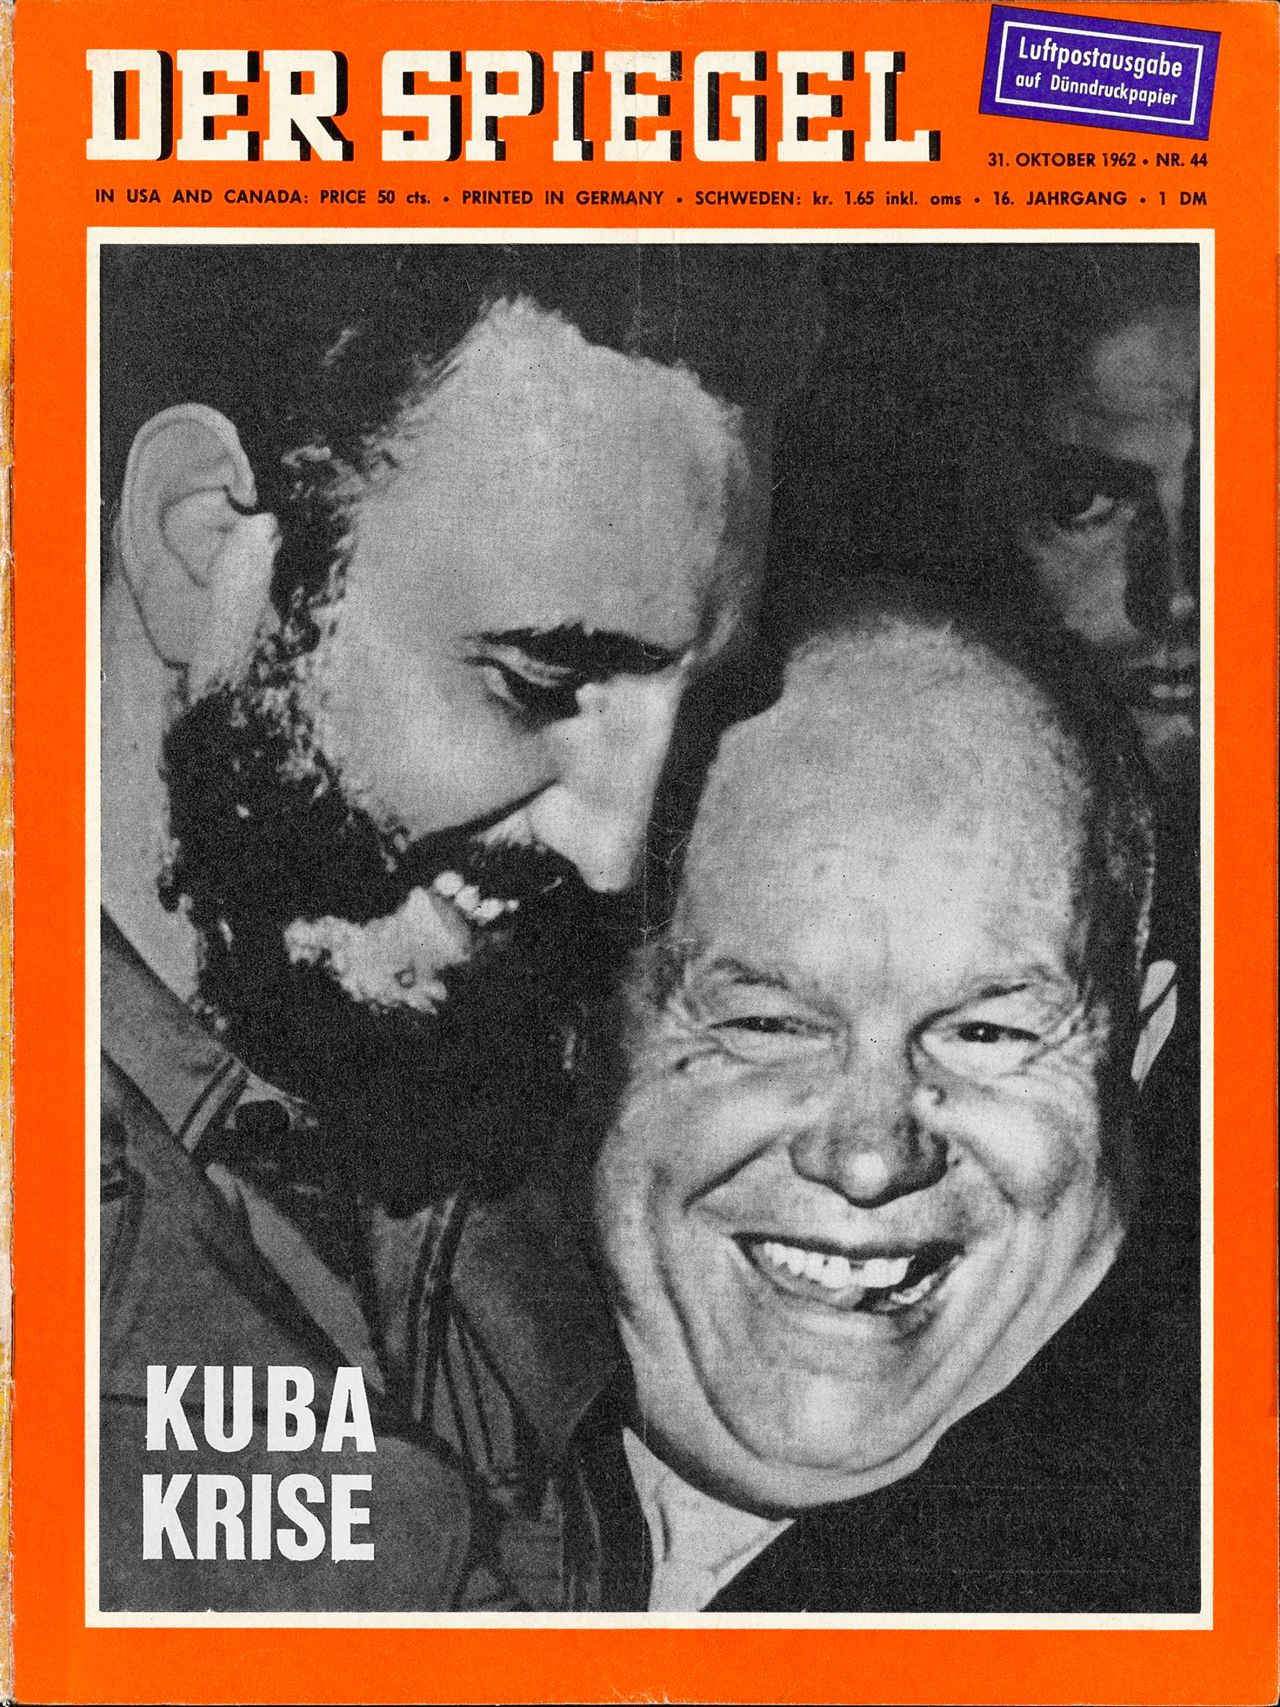 Spiegel-Titelblatt 16. Jahrgang 1962 Heft 44. Schwarzweiß-Foto mit den Gesichtern von Fidel Castro und Nikita S. Chrustschow, beide lachend. Im Hintergrund Gesichtshälfte von weiterer Person. Schriftzüge: 'Kuba Krise', ‚Luftpostausgabe auf Dünndruckpapier‘.